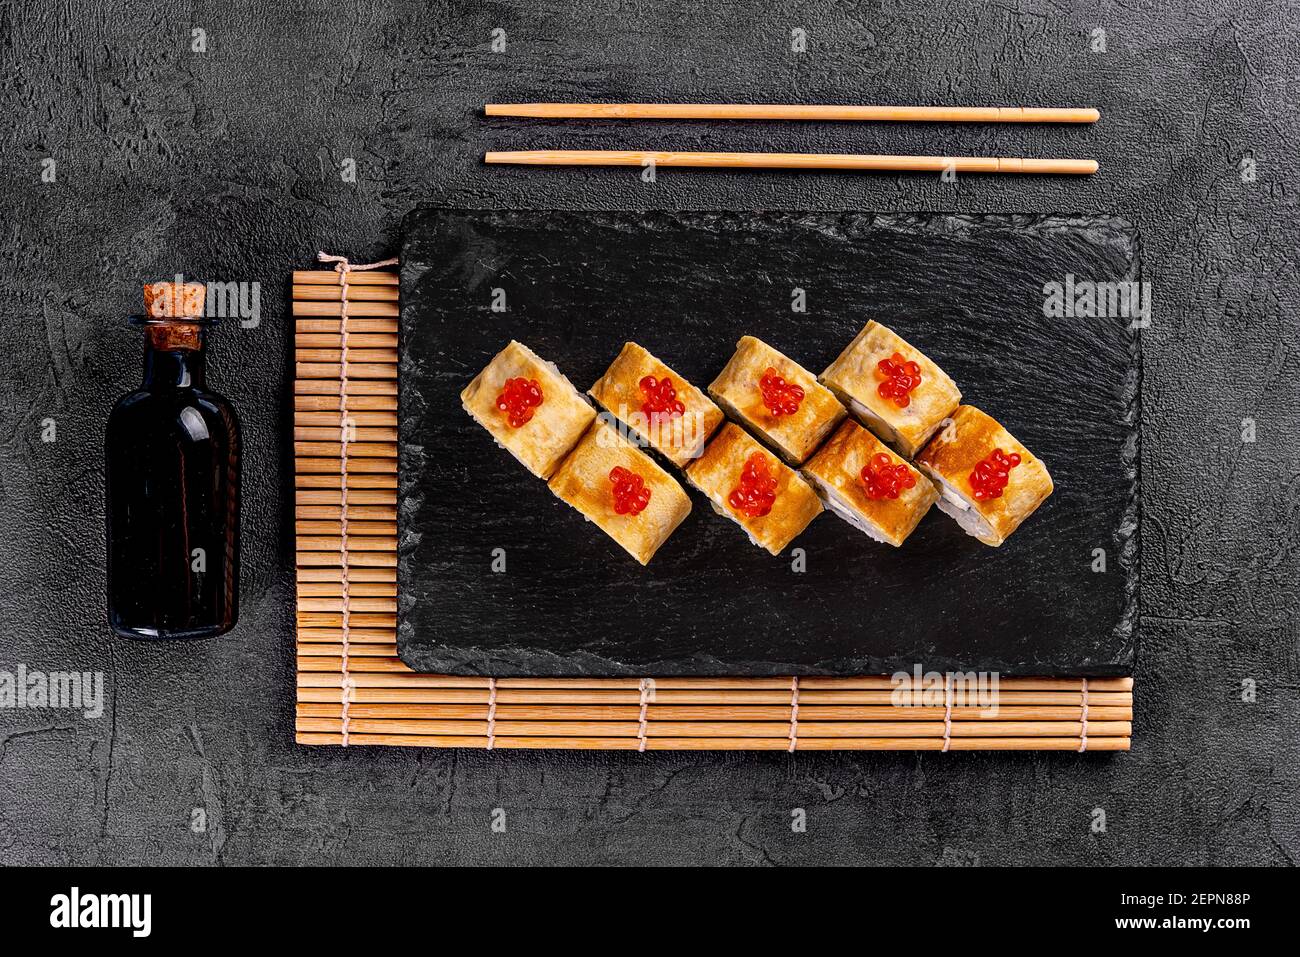 japanese sushi food Stock Photo